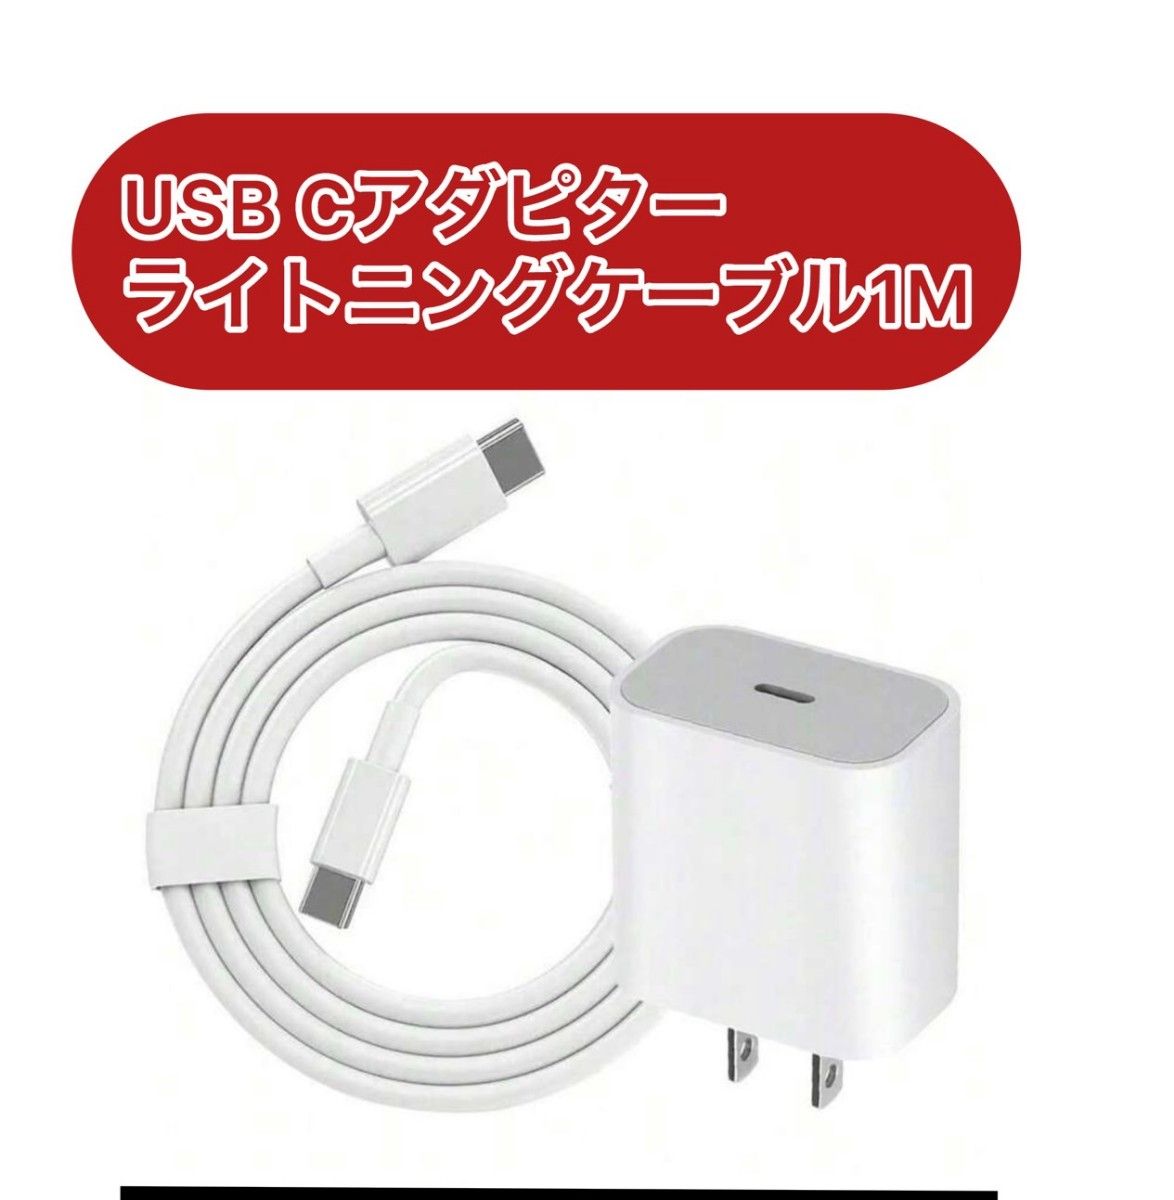 発送無料 iPhone充電器 マイクロUSB ライトニングケーブル USB急速充電